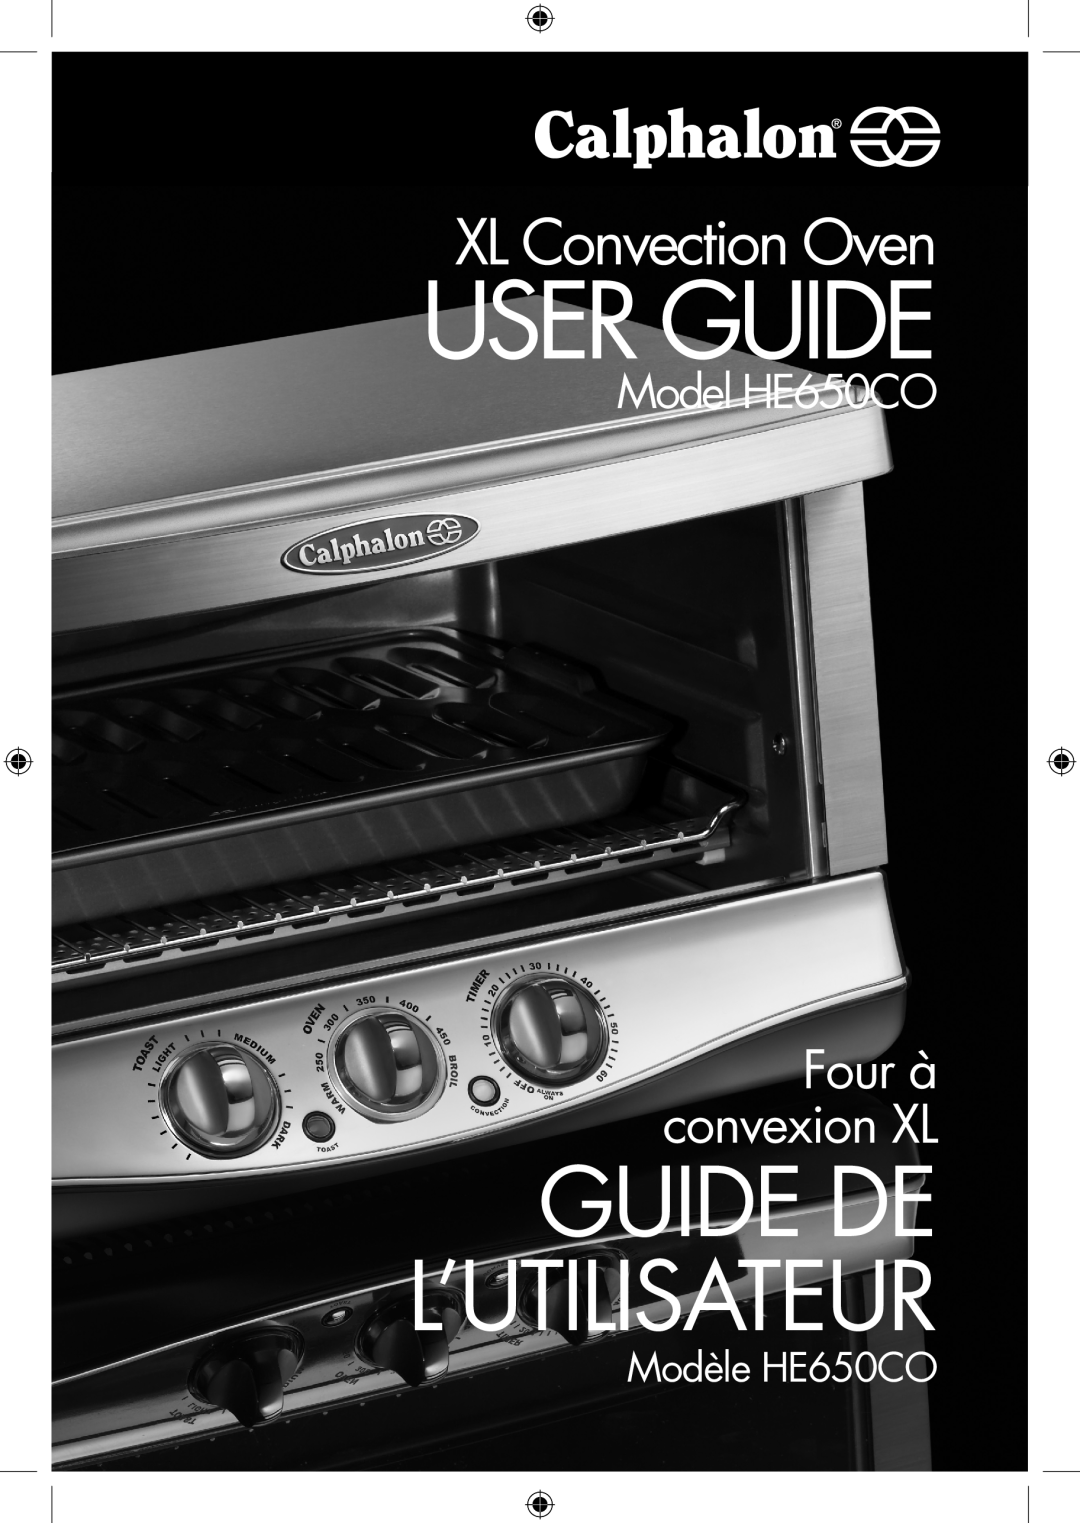 Calphalon he650co manual Model HE650CO, Modèle HE650CO, User Guide, Guide De L’Utilisateur, XL Convection Oven 